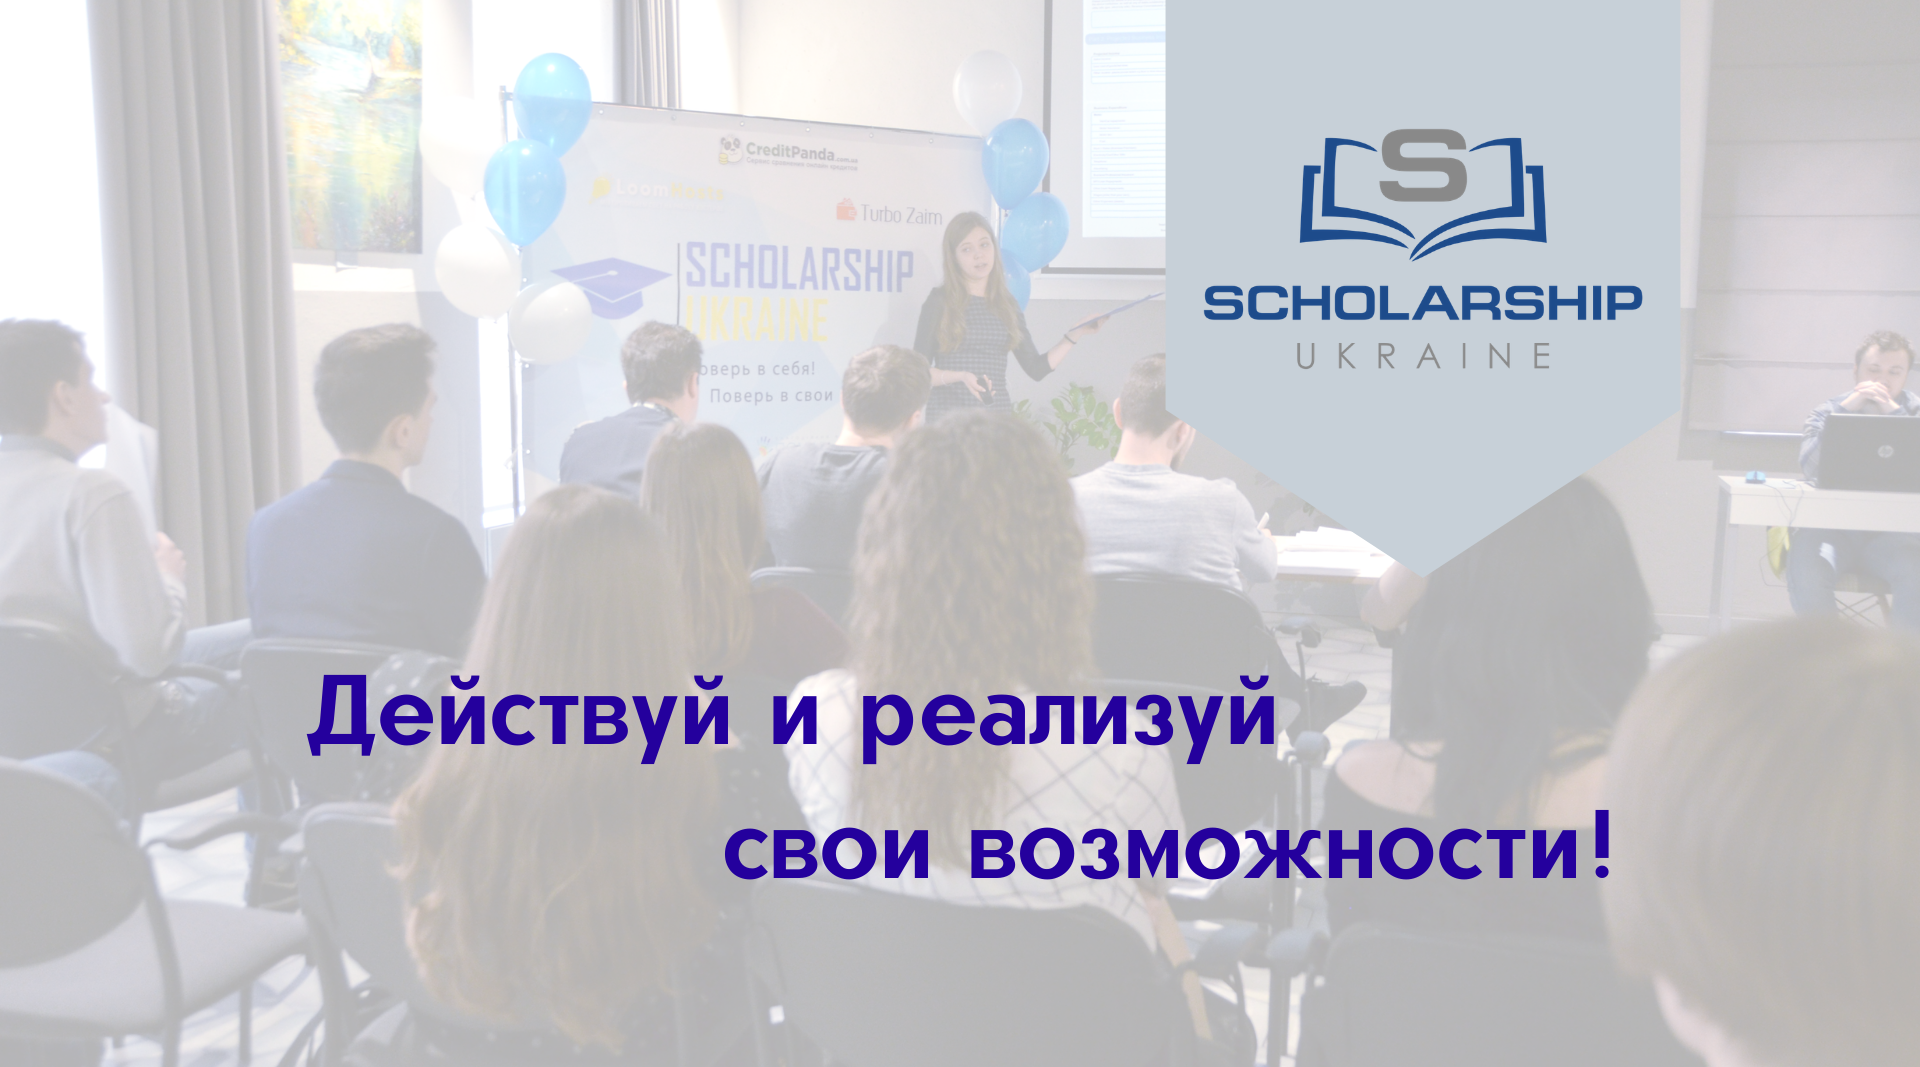 Scholarship в Украине – не упусти свой шанс получить грант на обучение